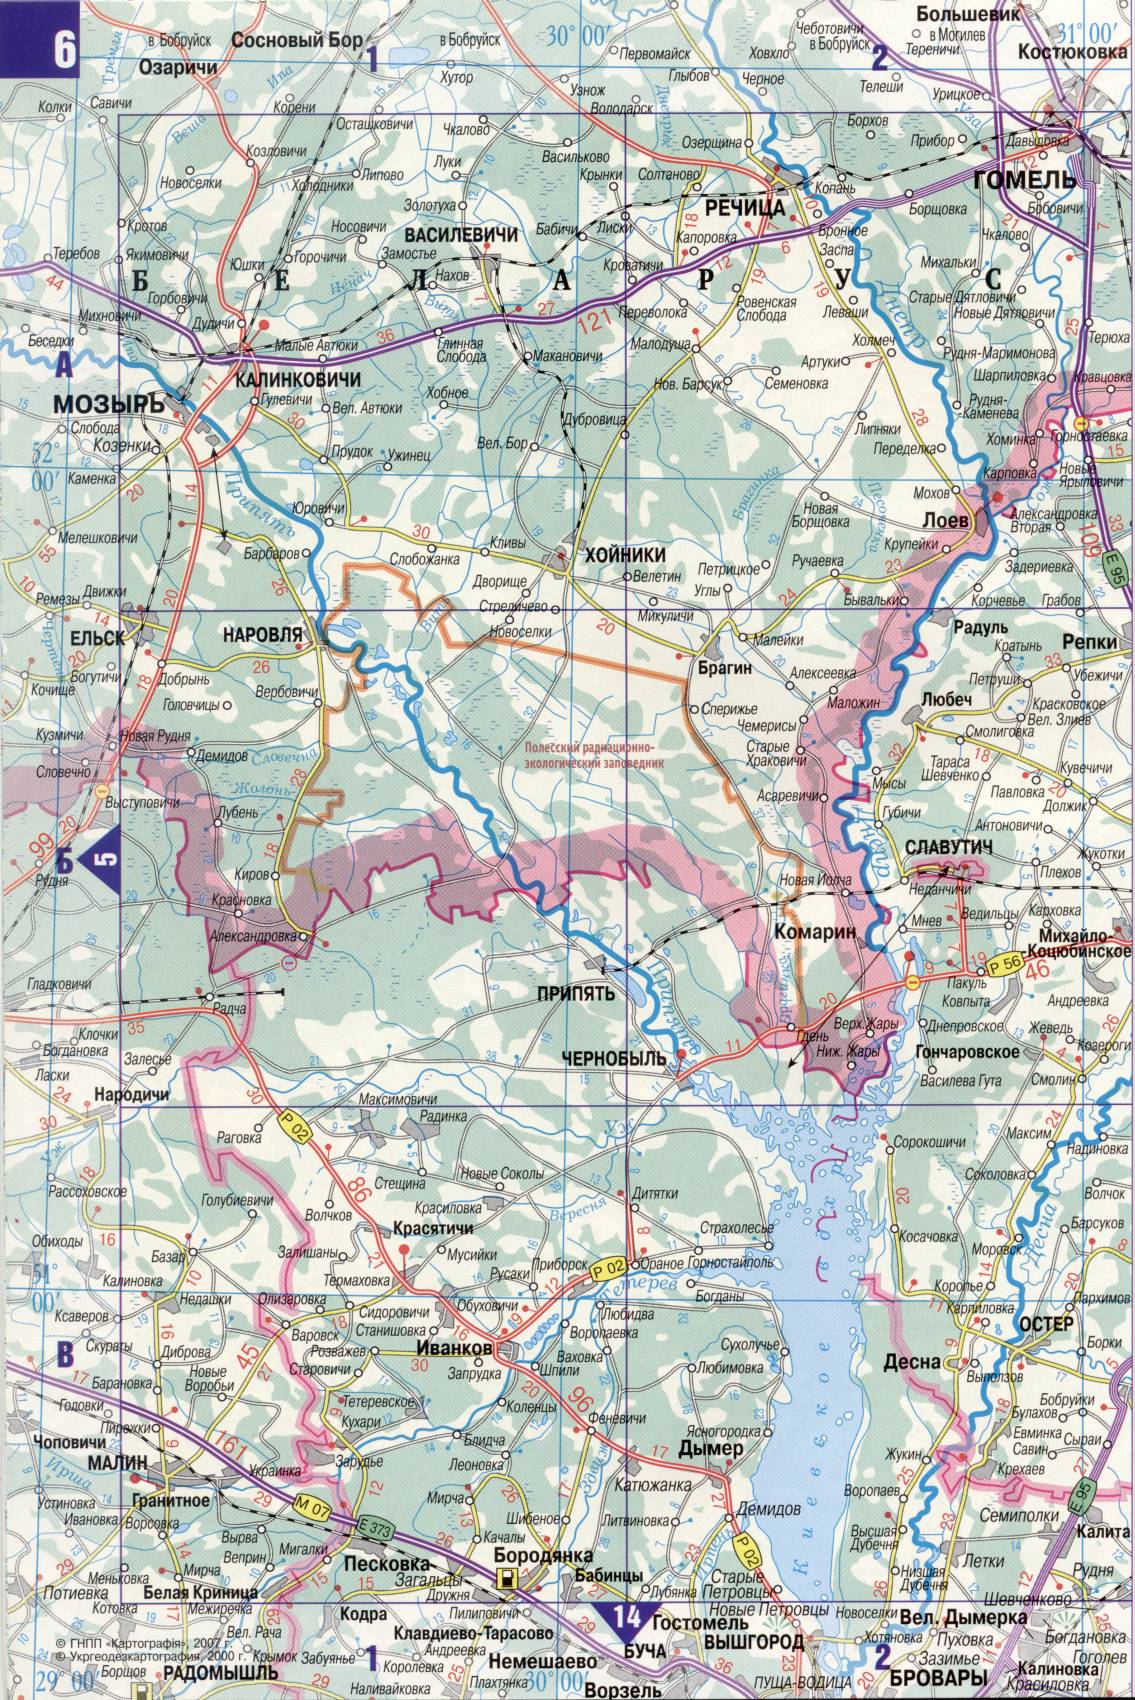 Karte der Ukraine. Detaillierte Straßenkarte der Ukraine avtomobilnog Satin. kostenlos herunterladen, E0